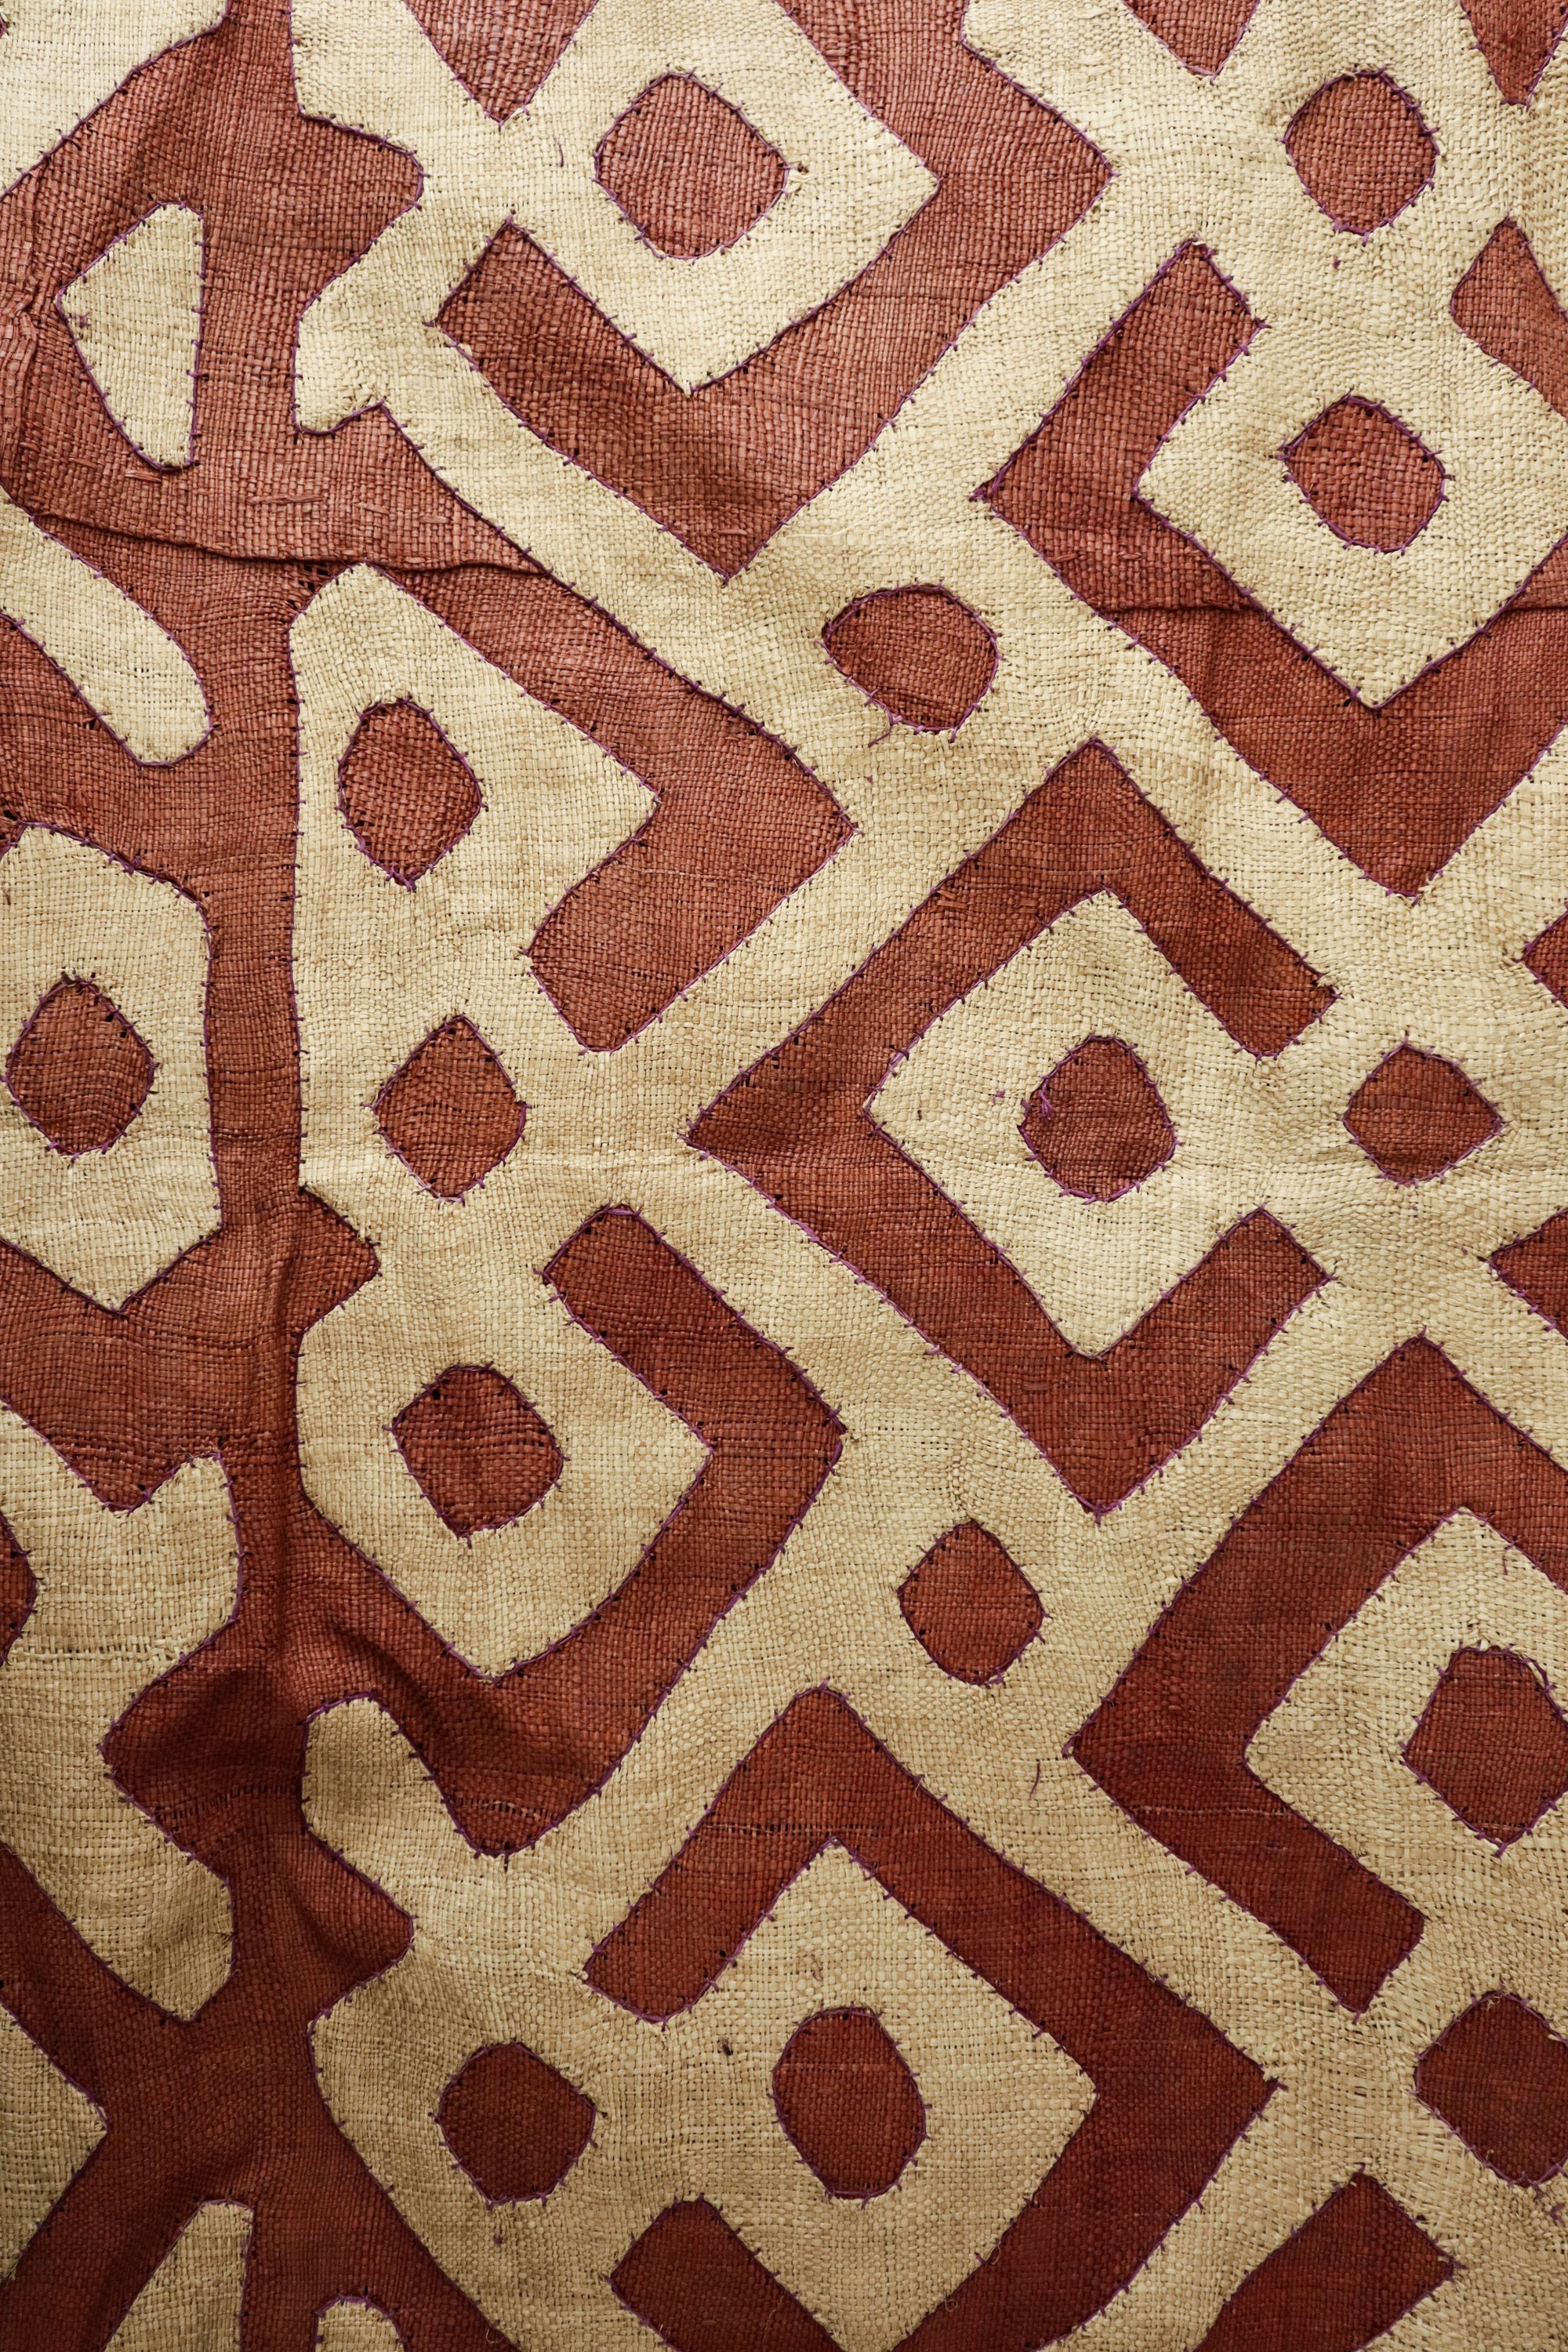 Kuba cloth, Congo - 7.1